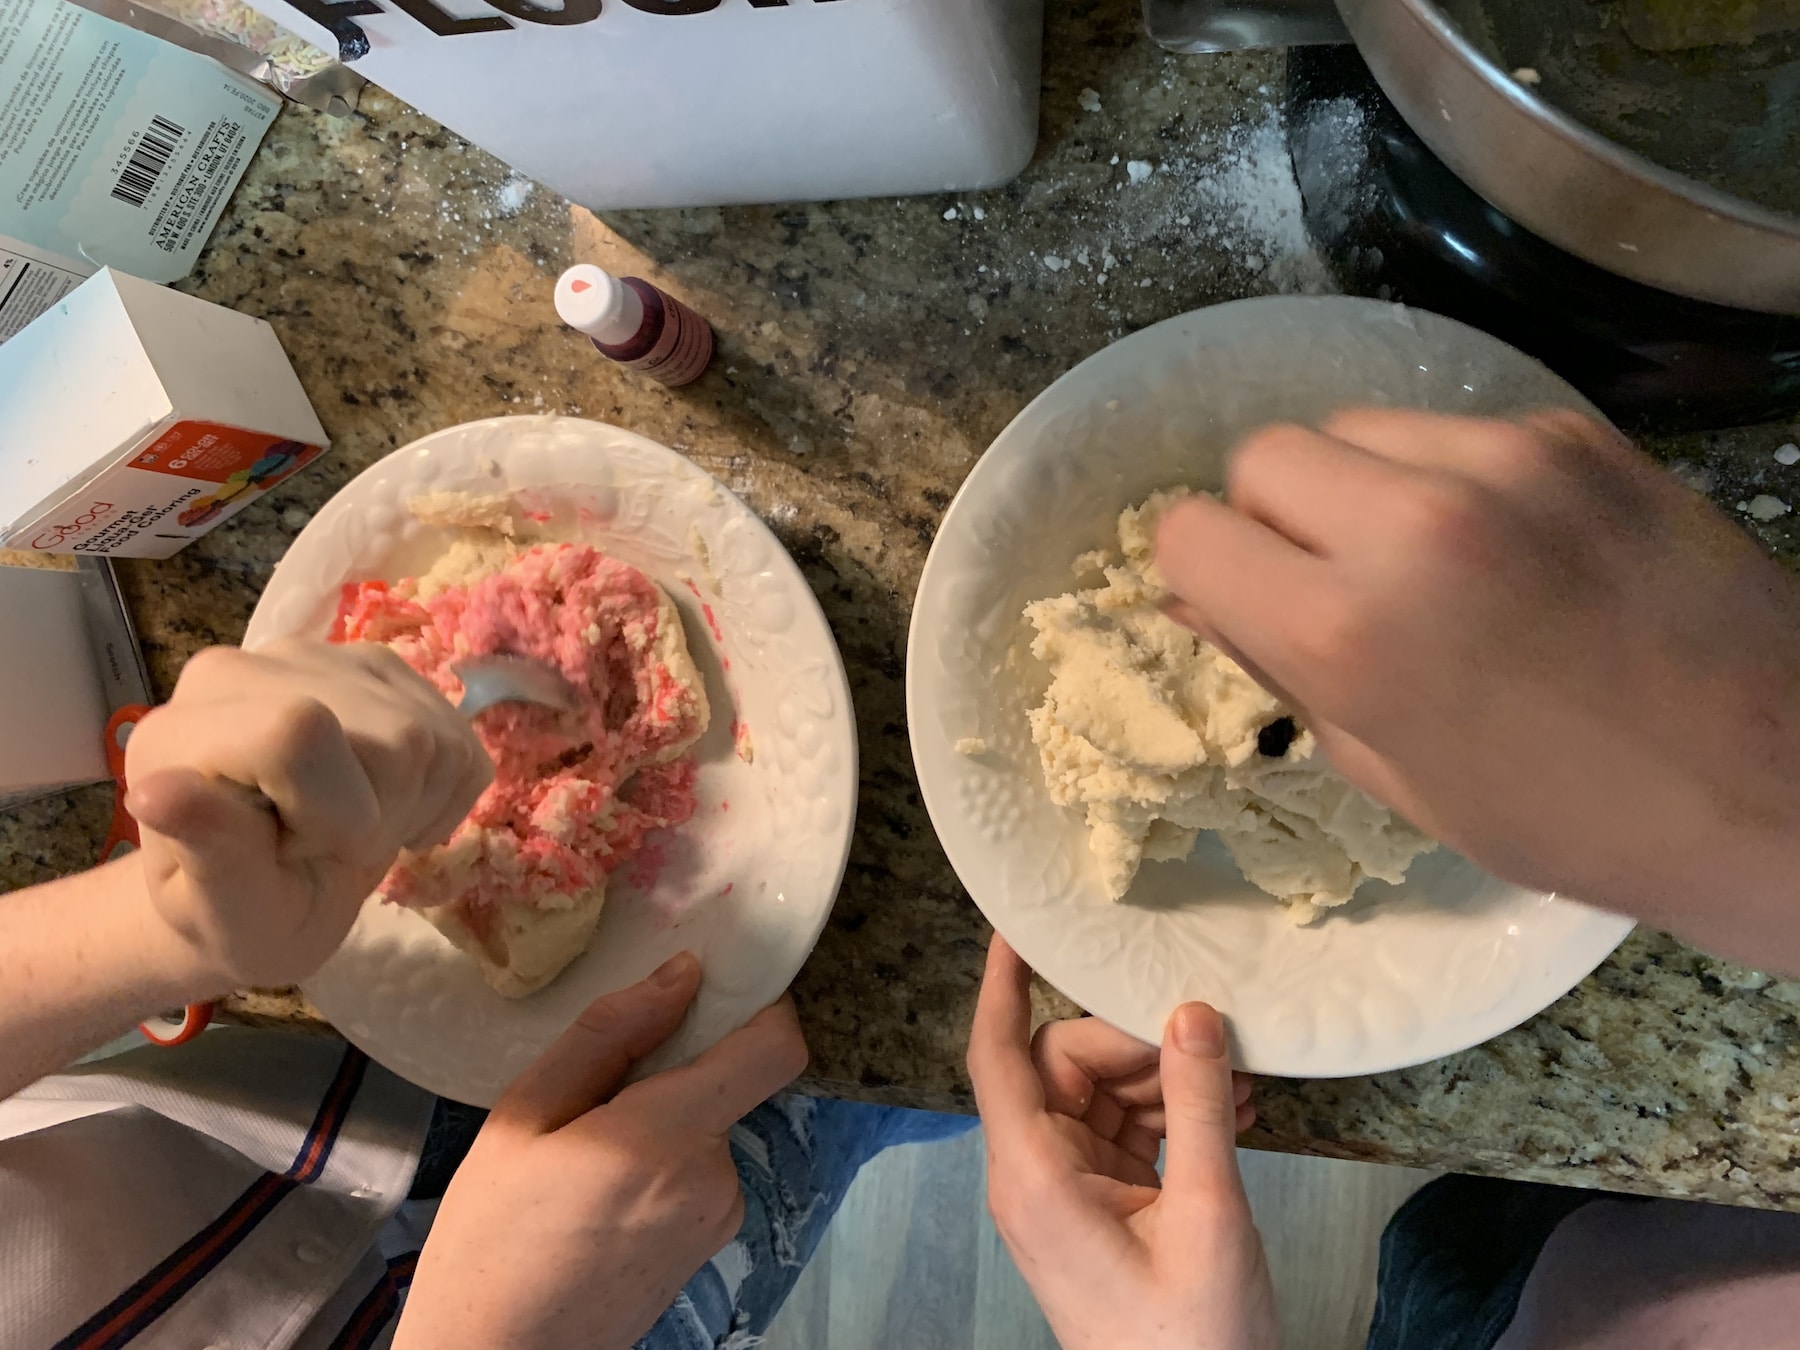 coloring edible sugar cookie dough